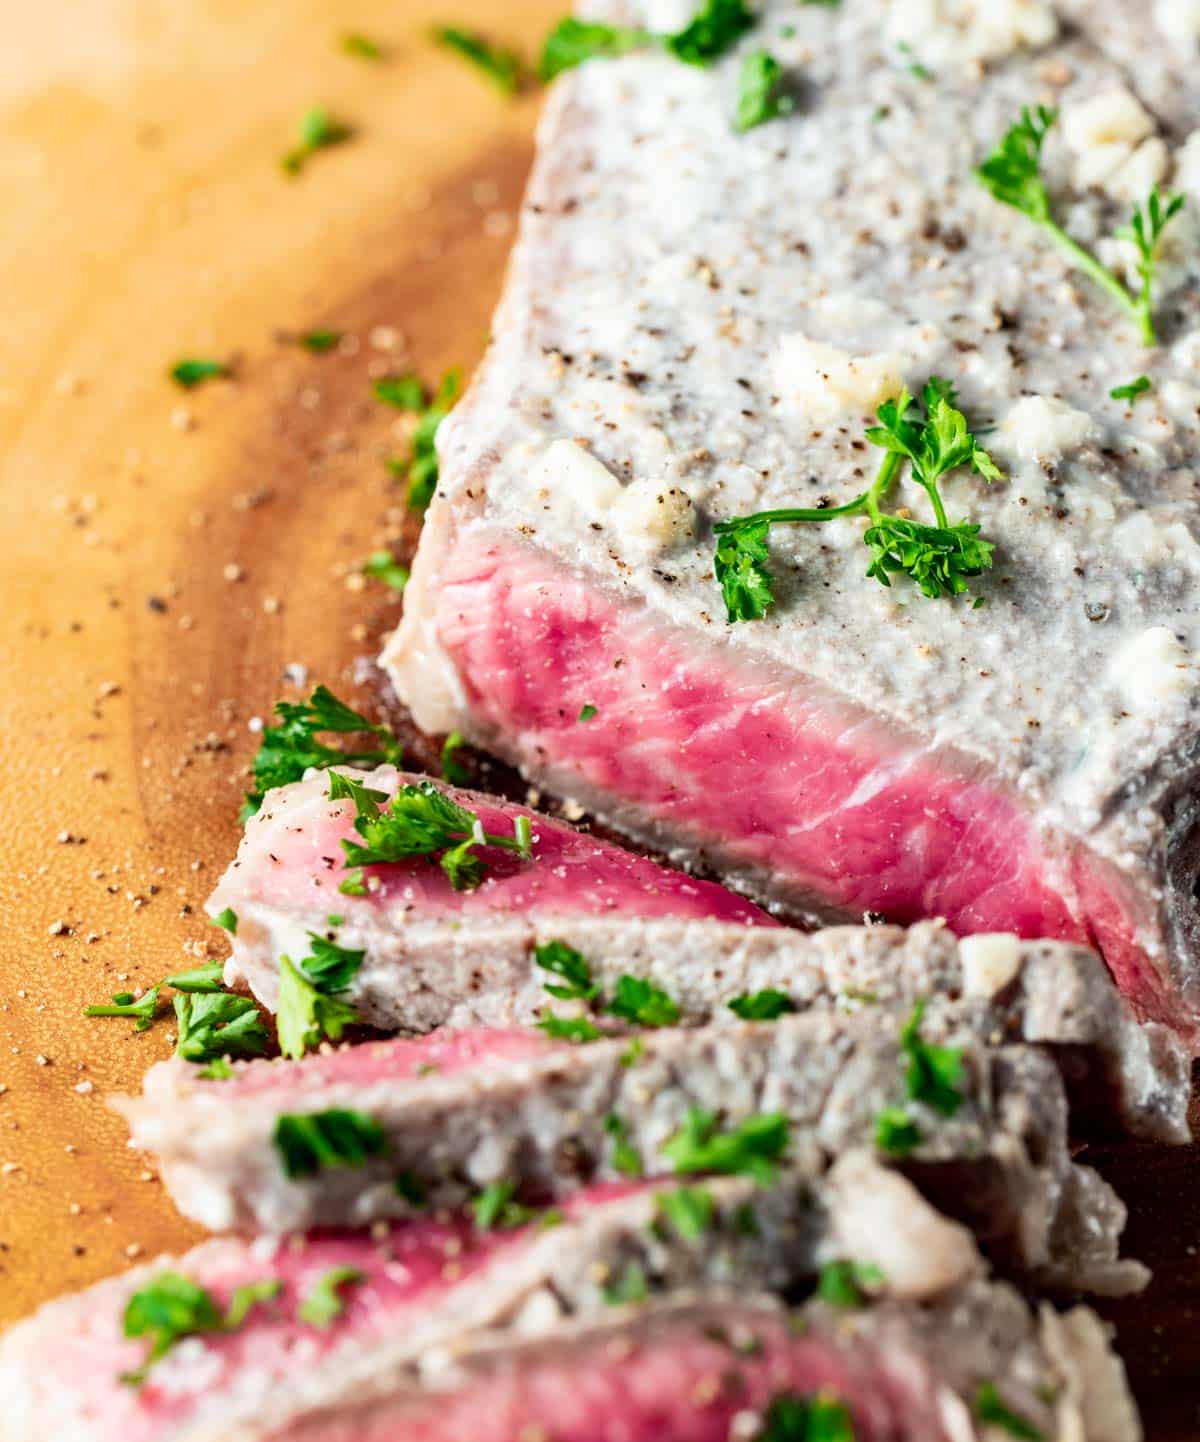 Close up view of medium rare slices of milk steak.